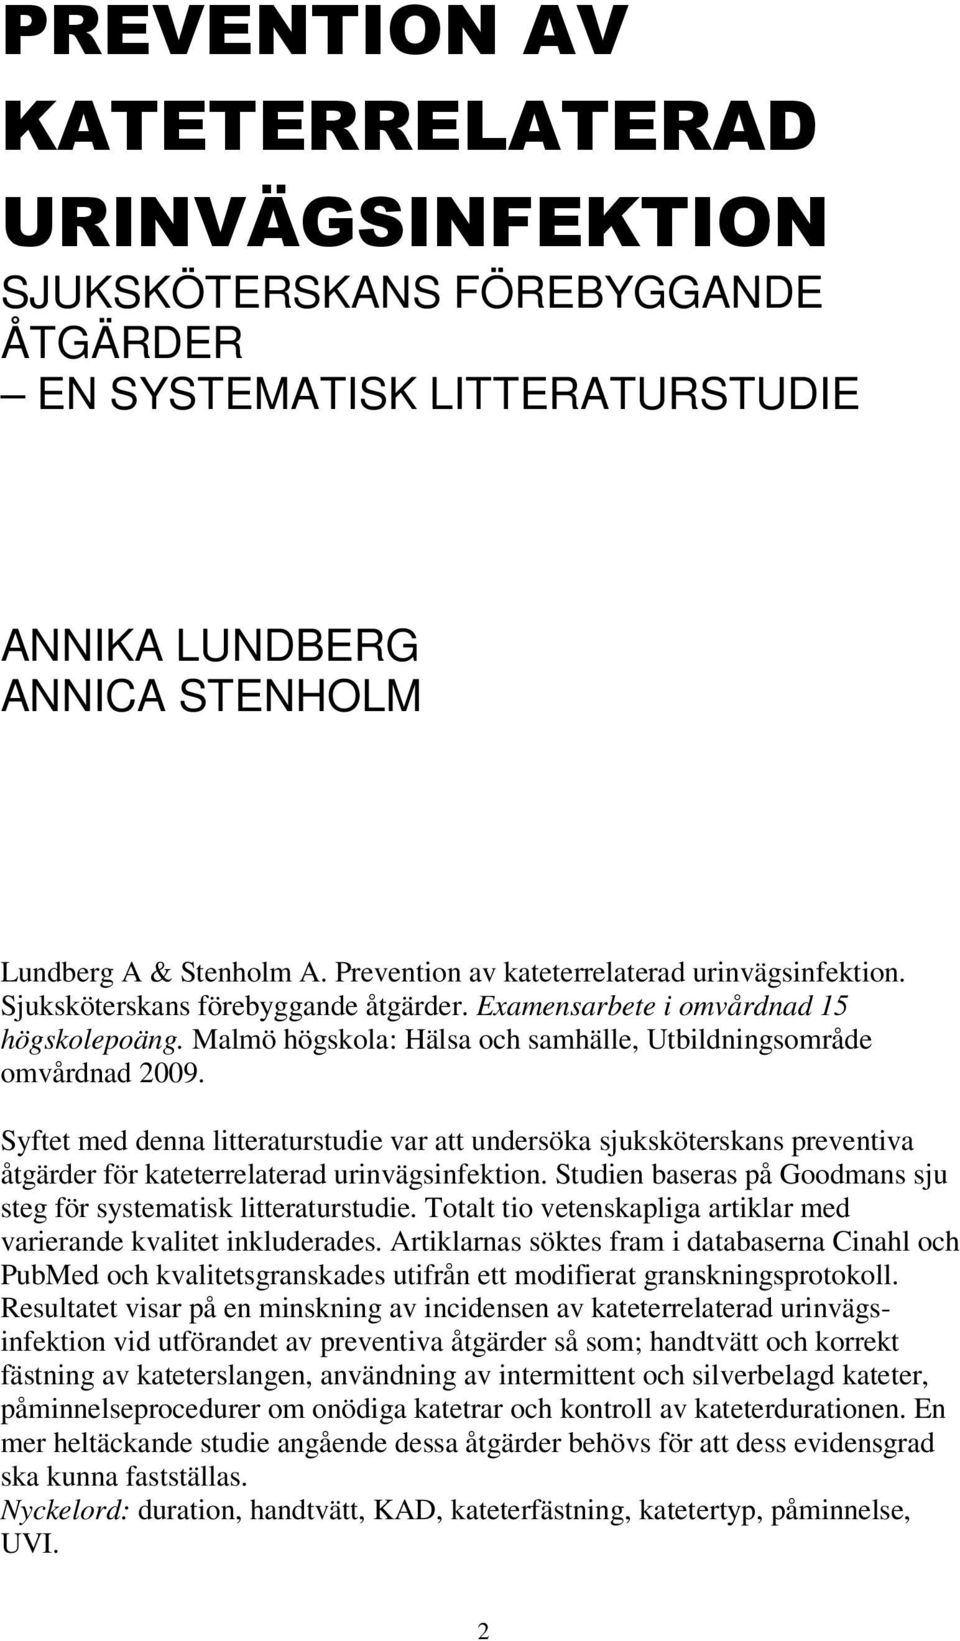 Malmö högskola: Hälsa och samhälle, Utbildningsområde omvårdnad 2009. Syftet med denna litteraturstudie var att undersöka sjuksköterskans preventiva åtgärder för kateterrelaterad urinvägsinfektion.